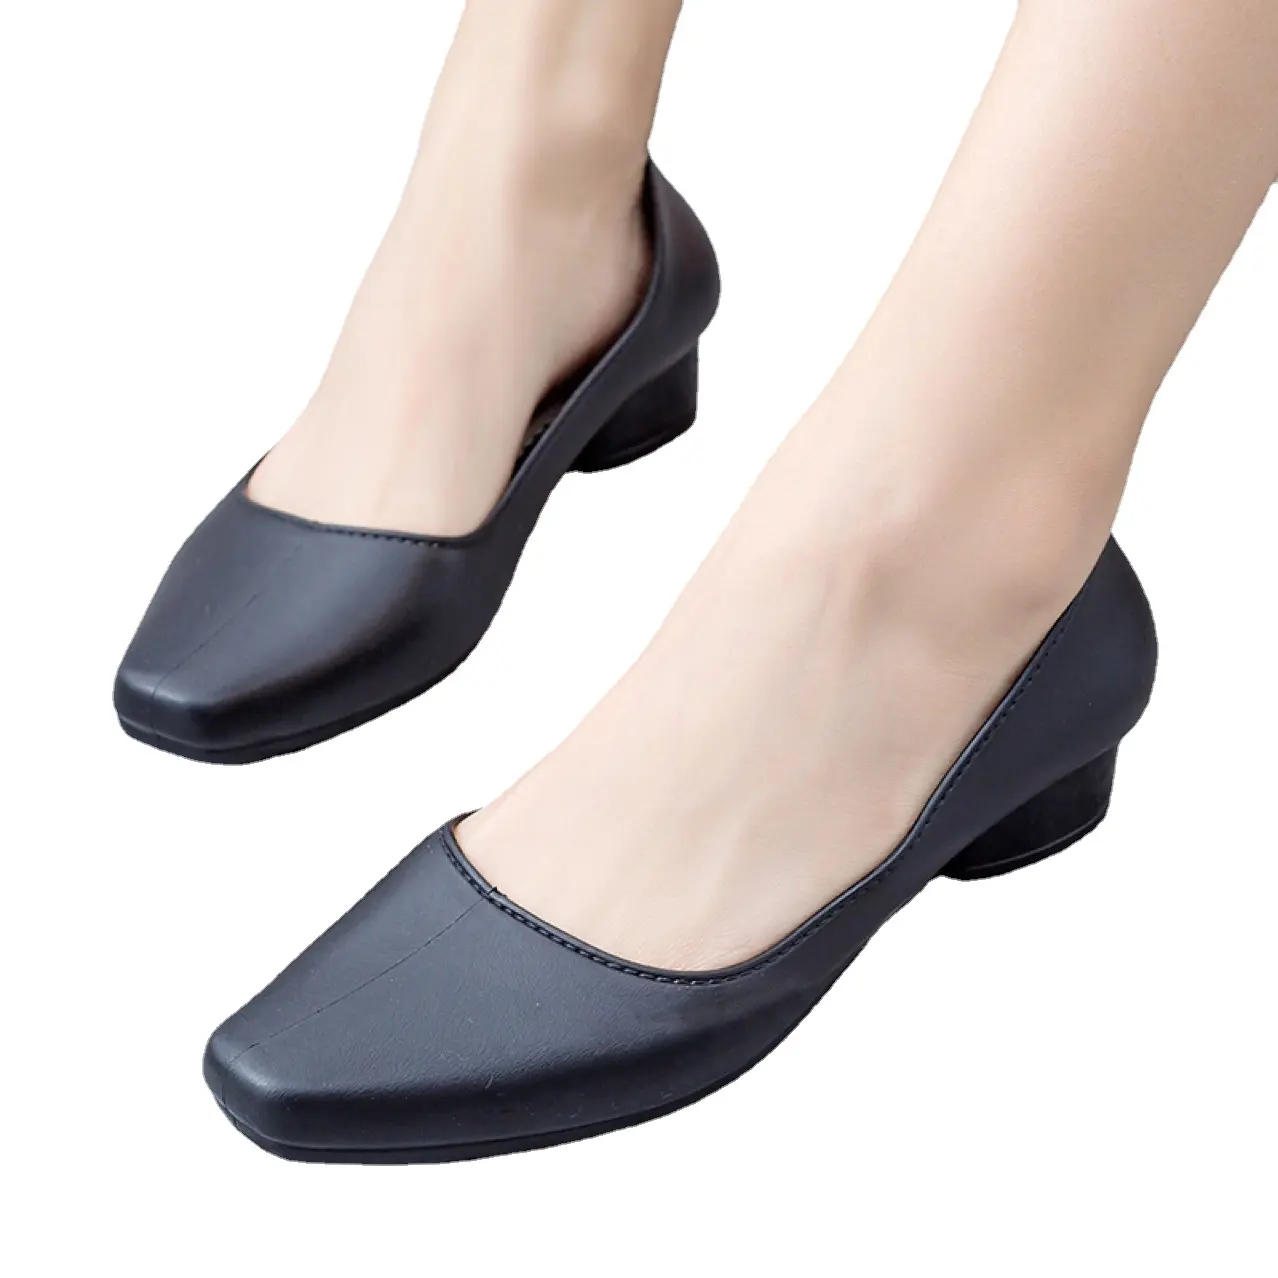 Casual verão sandálias das mulheres de plástico macio sola antiderrapante impermeável sapatos únicos grossos com chinelos de trabalho ao ar livre